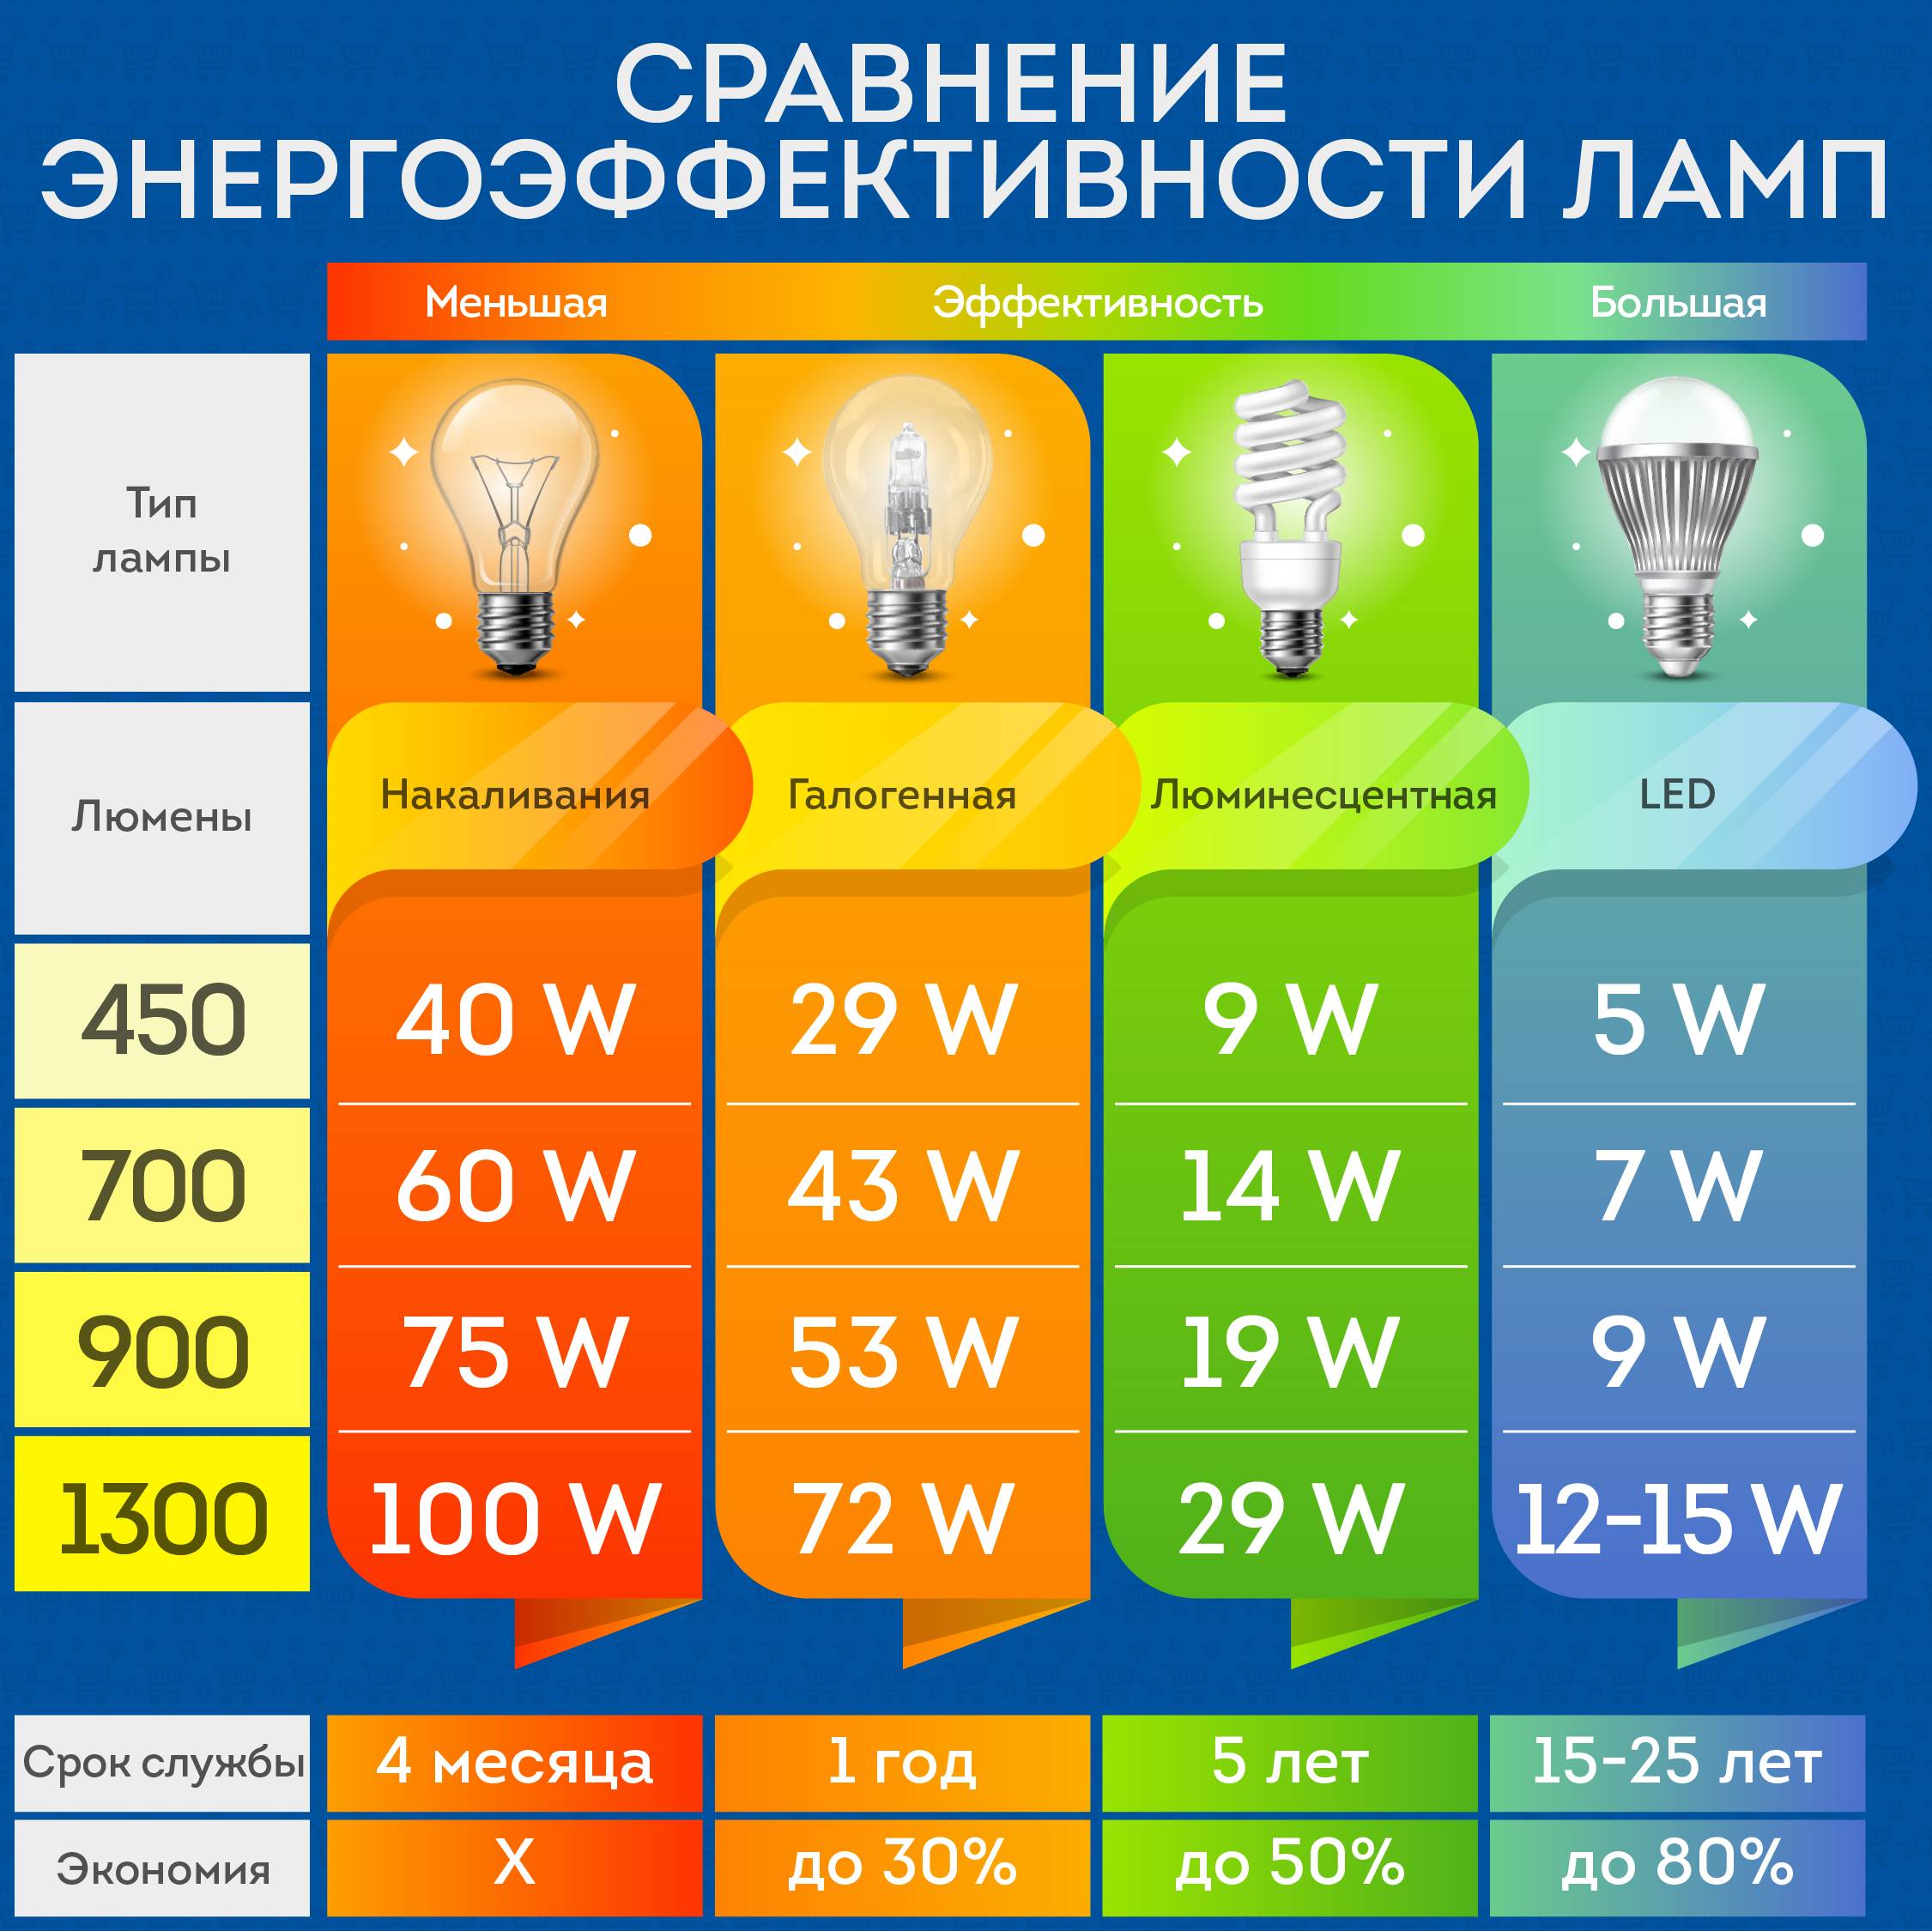 Как выбрать светодиодные лампочки для дома